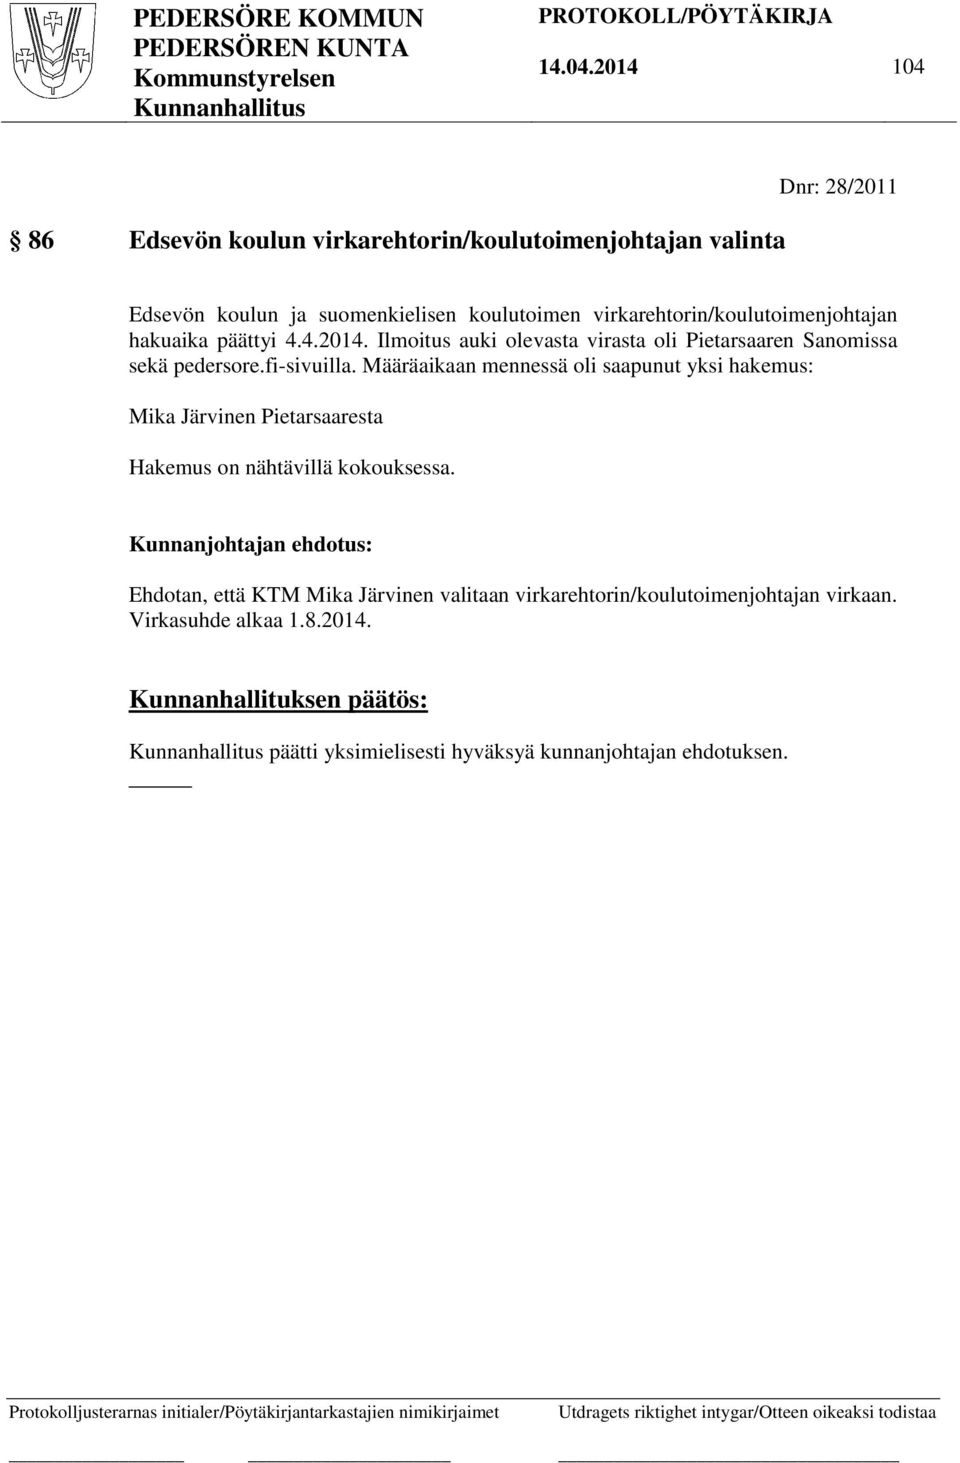 virkarehtorin/koulutoimenjohtajan hakuaika päättyi 4.4.2014. Ilmoitus auki olevasta virasta oli Pietarsaaren Sanomissa sekä pedersore.fi-sivuilla.